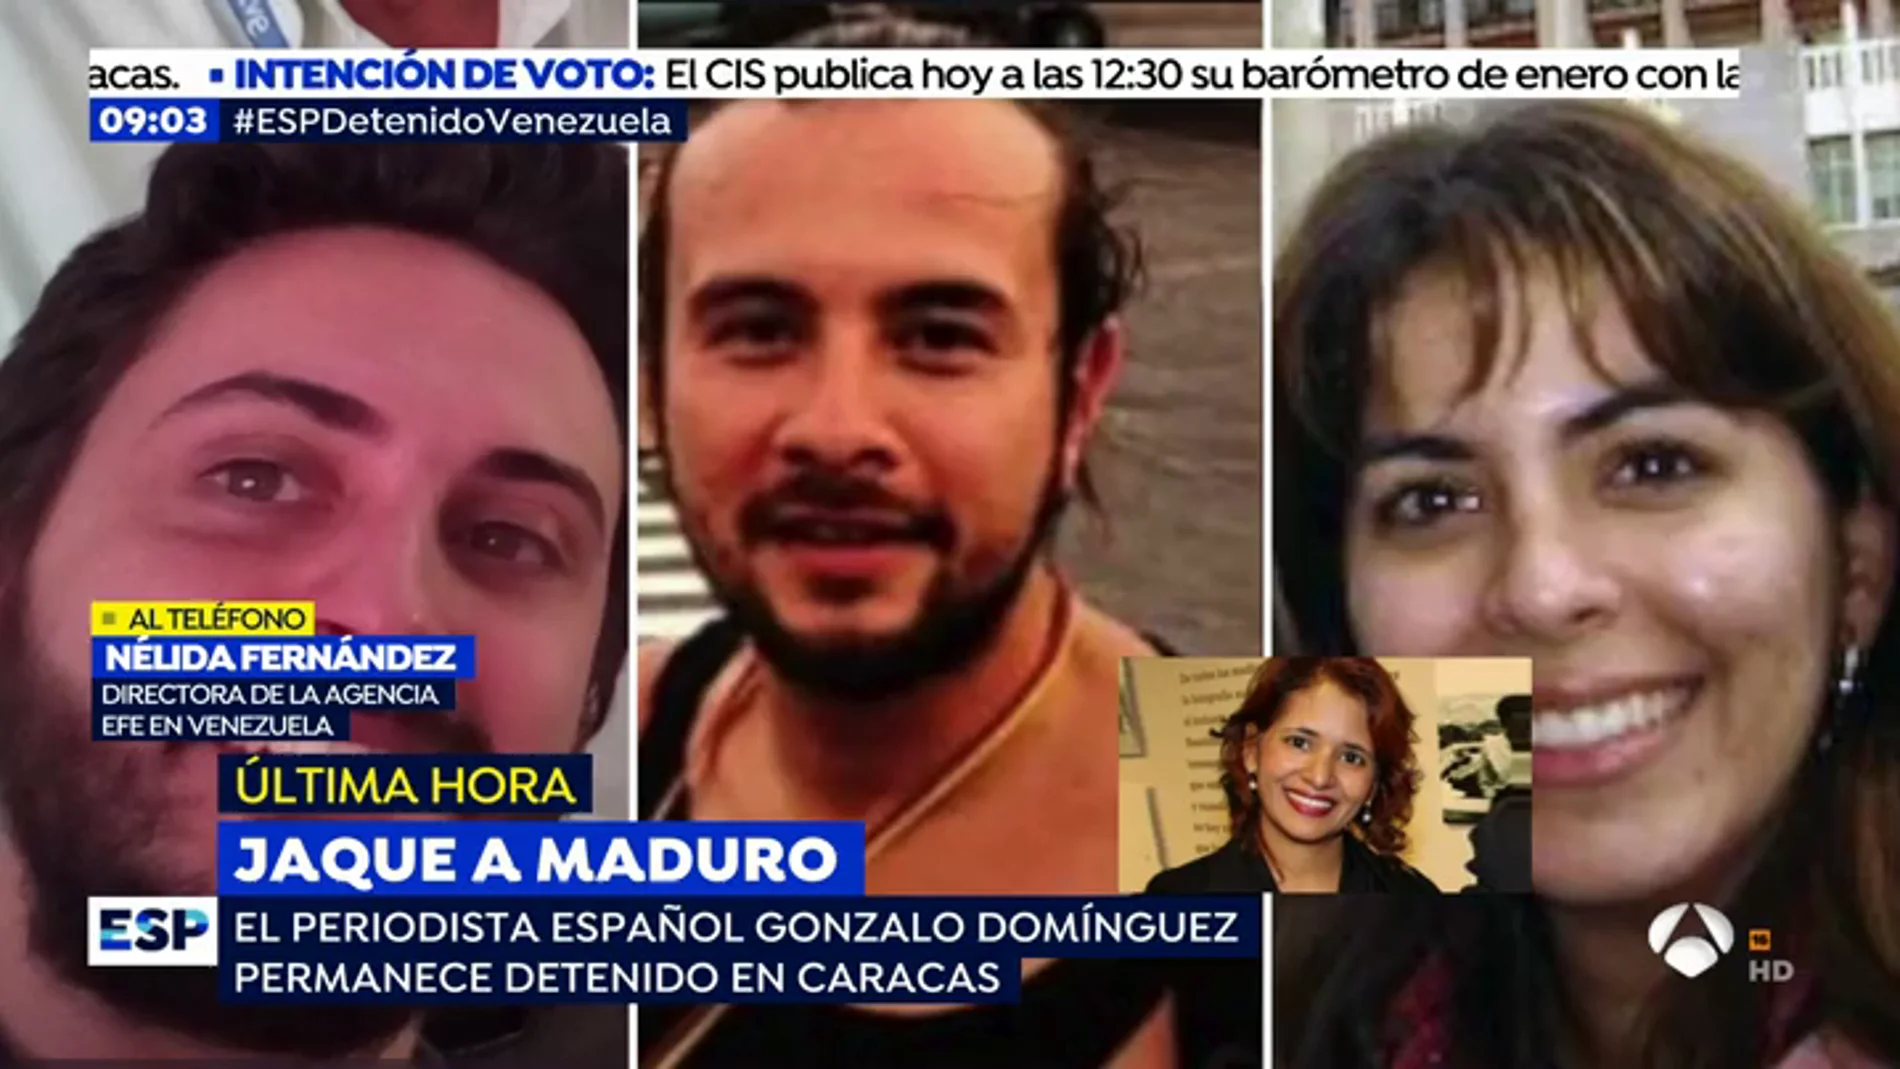 La directora de EFE Venezuela confirma la detención de un periodista español: "Esto ha sido un secuestro"